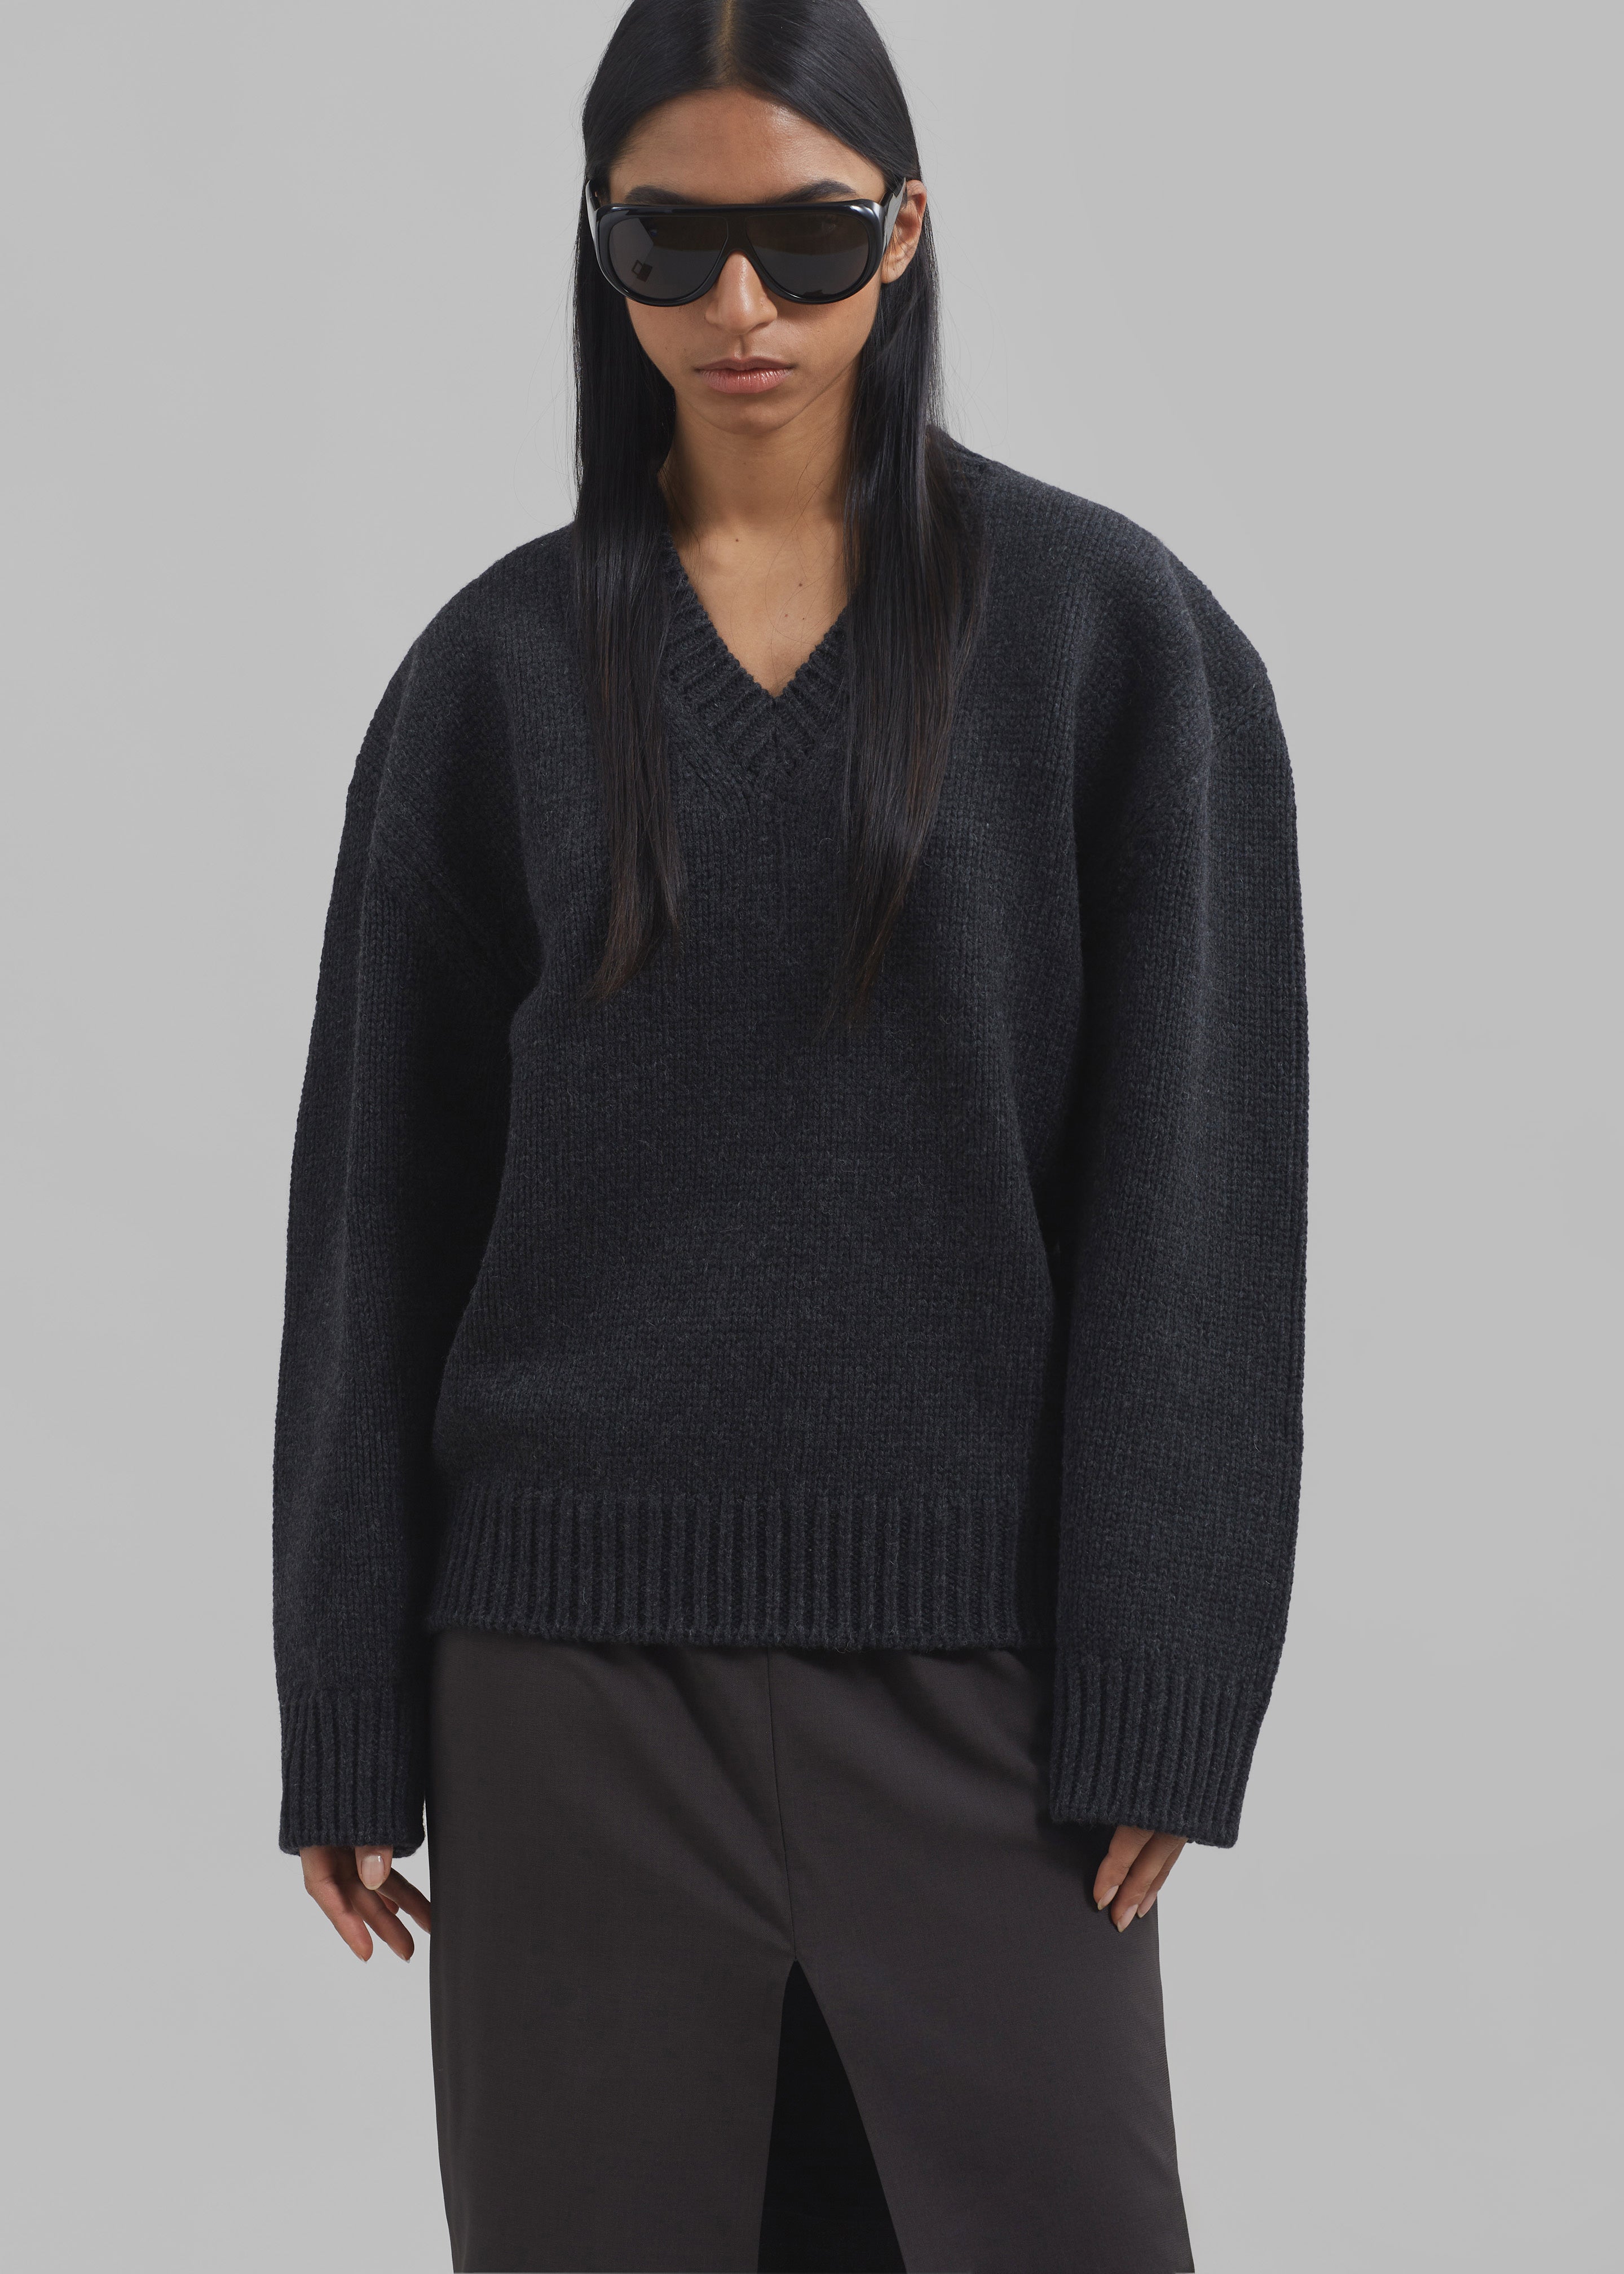 Edina Two Tone Wool Sweater - Charcoal - 6